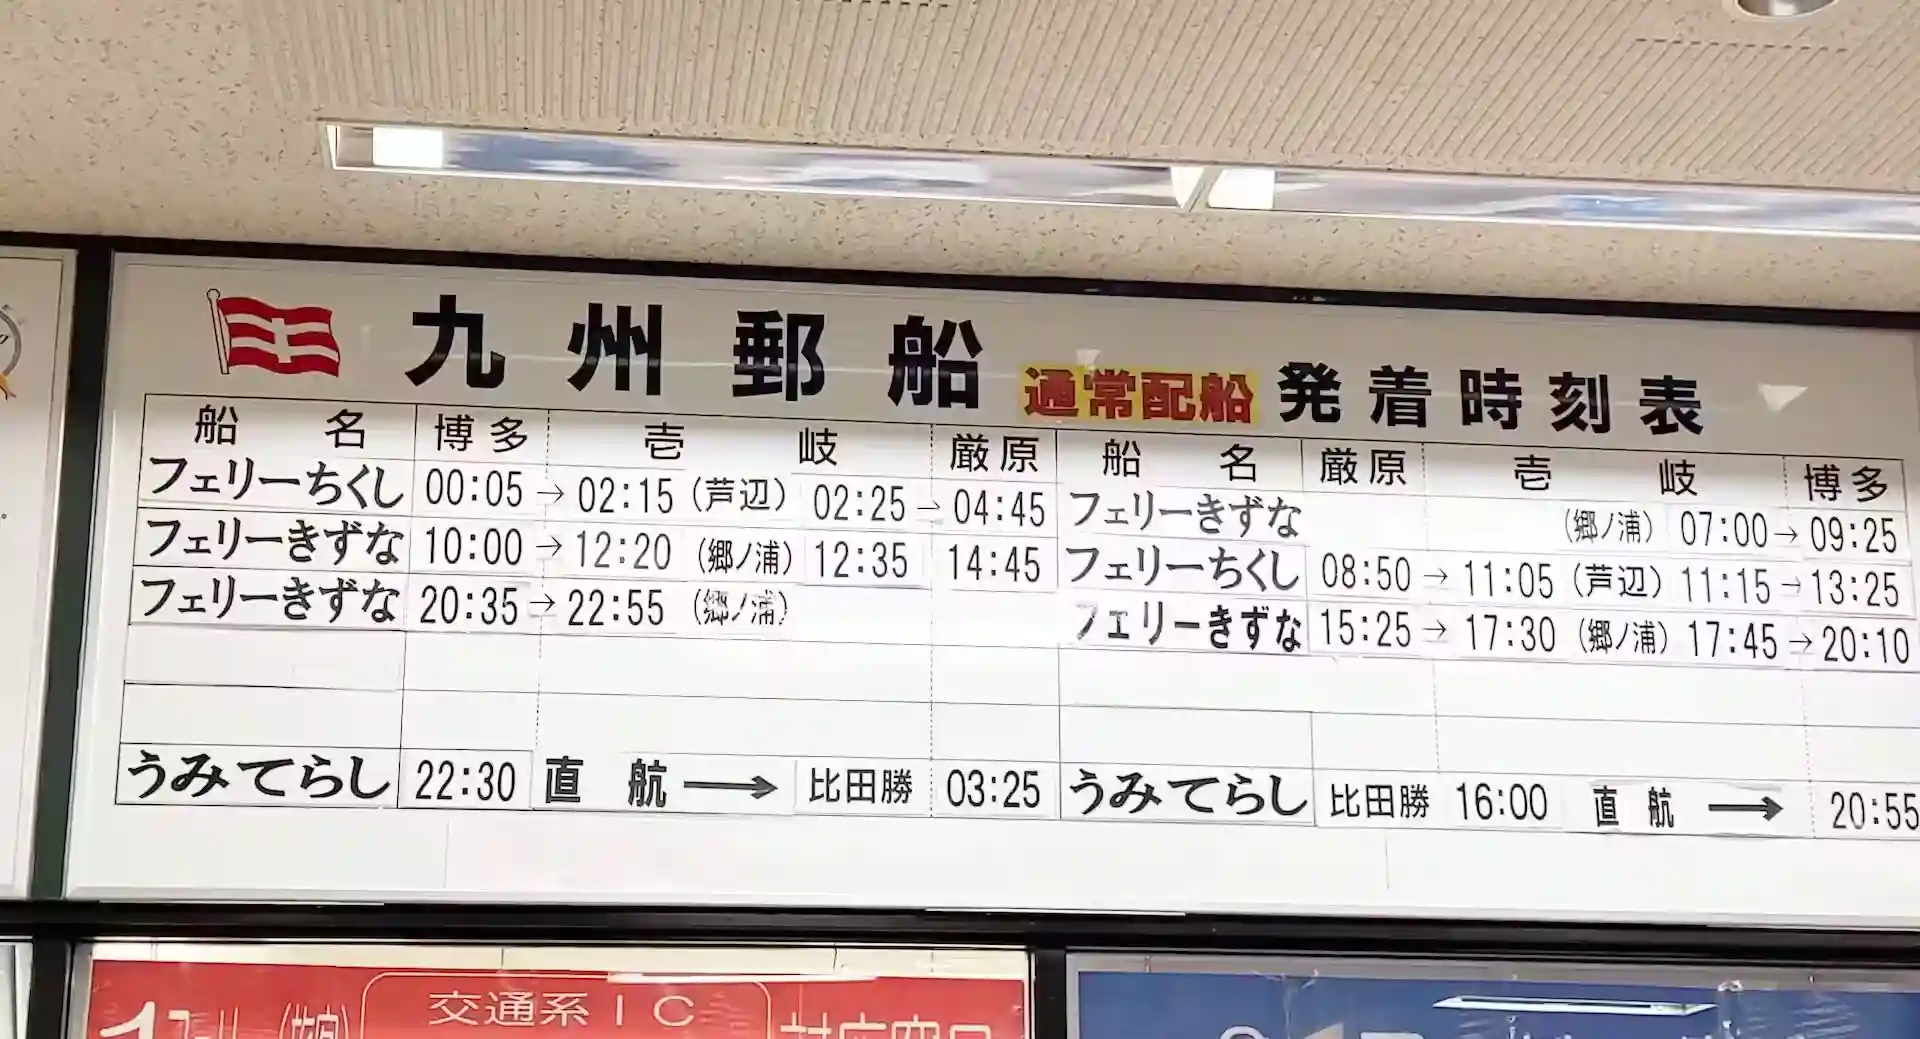 博多埠頭の受付の上に貼られている九州郵船の時刻表